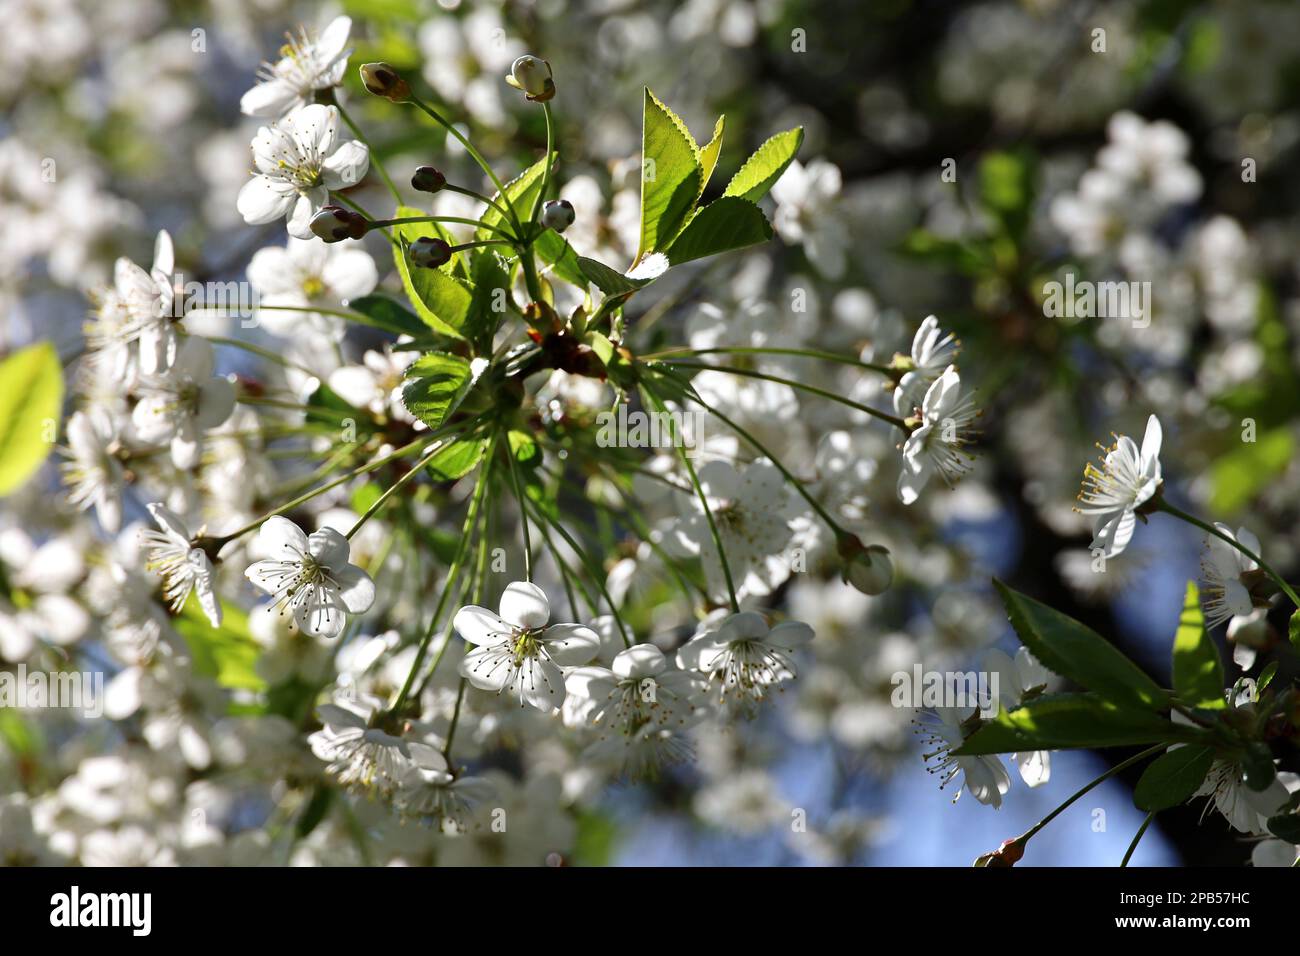 Cerisiers en fleurs dans le jardin de printemps en plein soleil. Fleurs blanches sur des branches d'arbre avec des feuilles vertes Banque D'Images